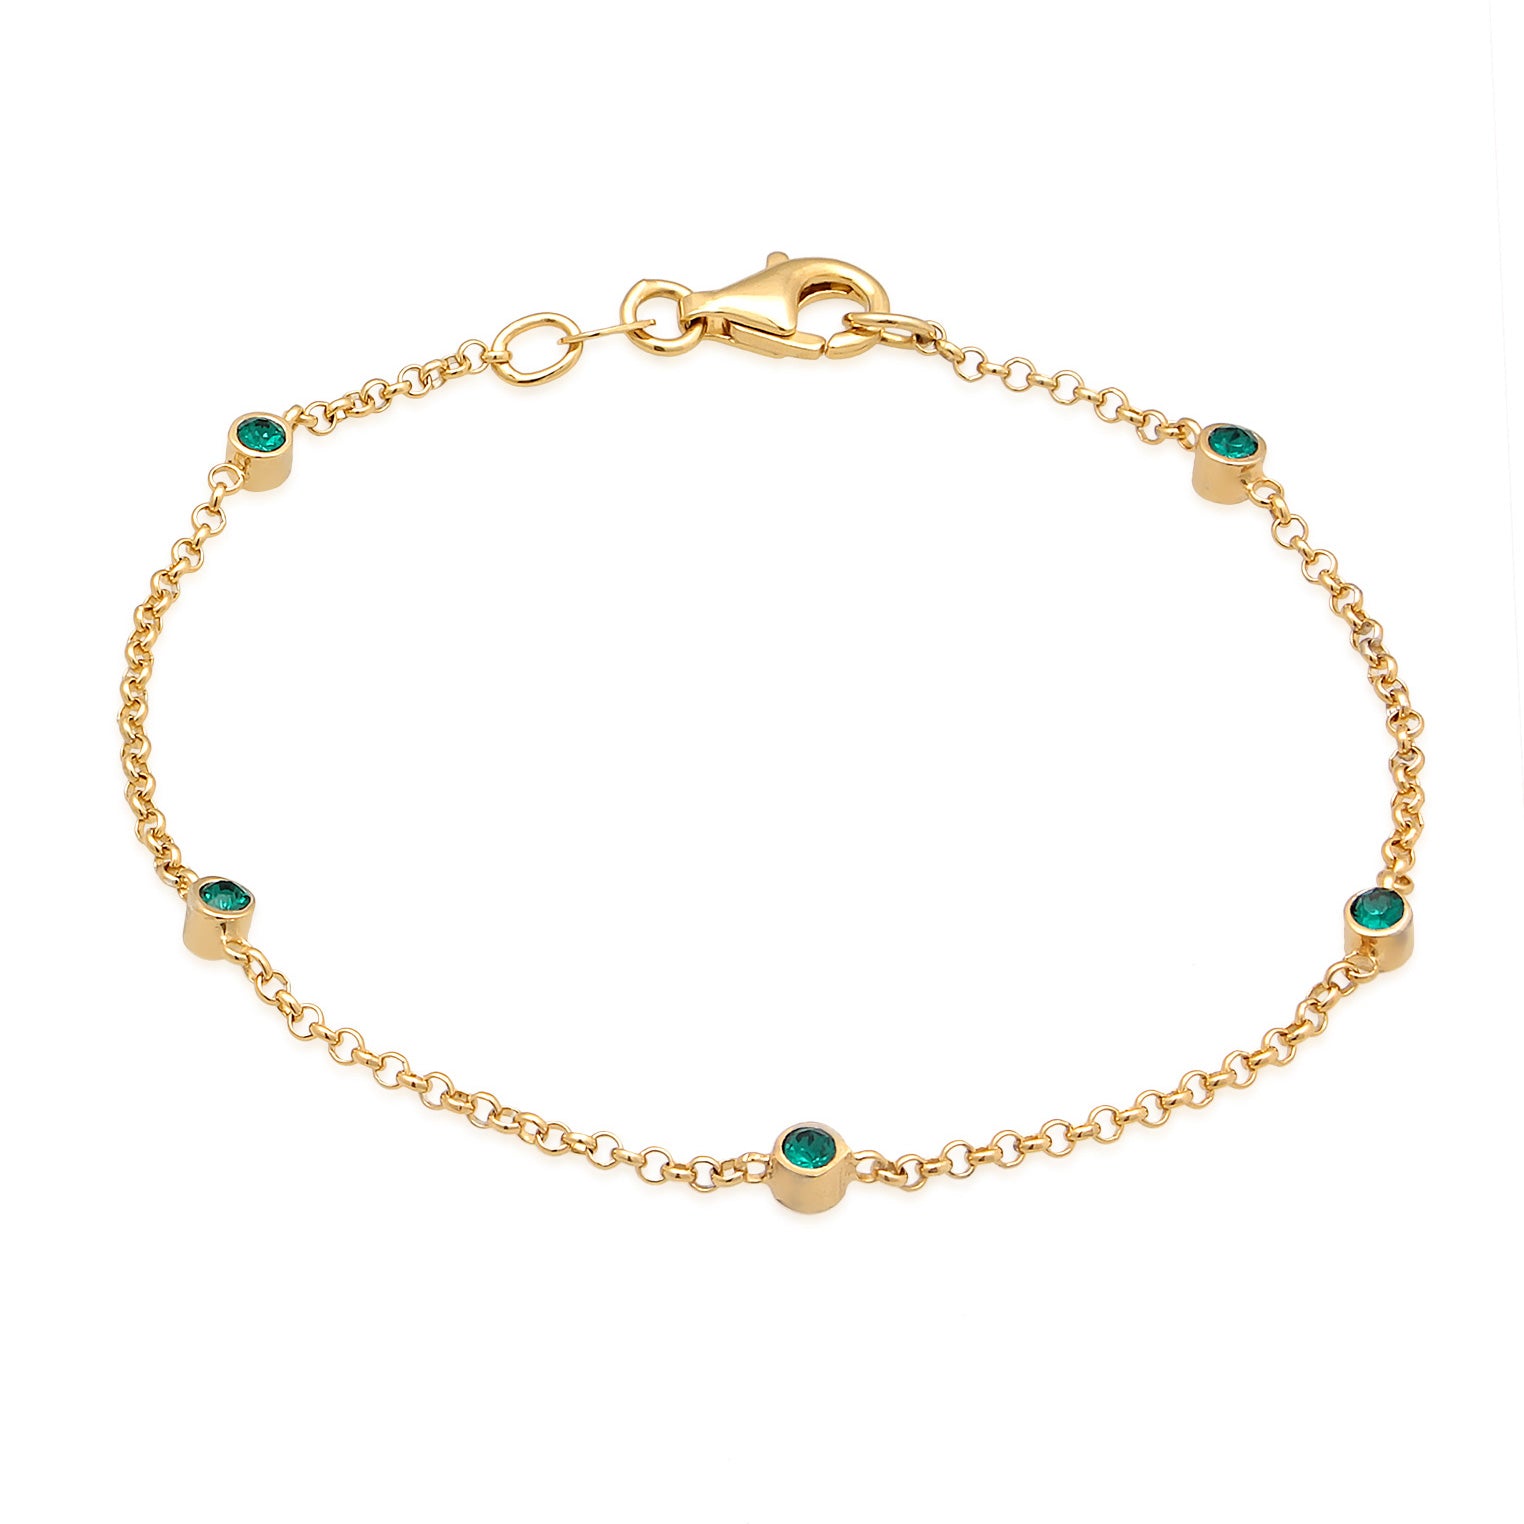 Armbänder im Online-Shop von Elli kaufen – Elli Jewelry